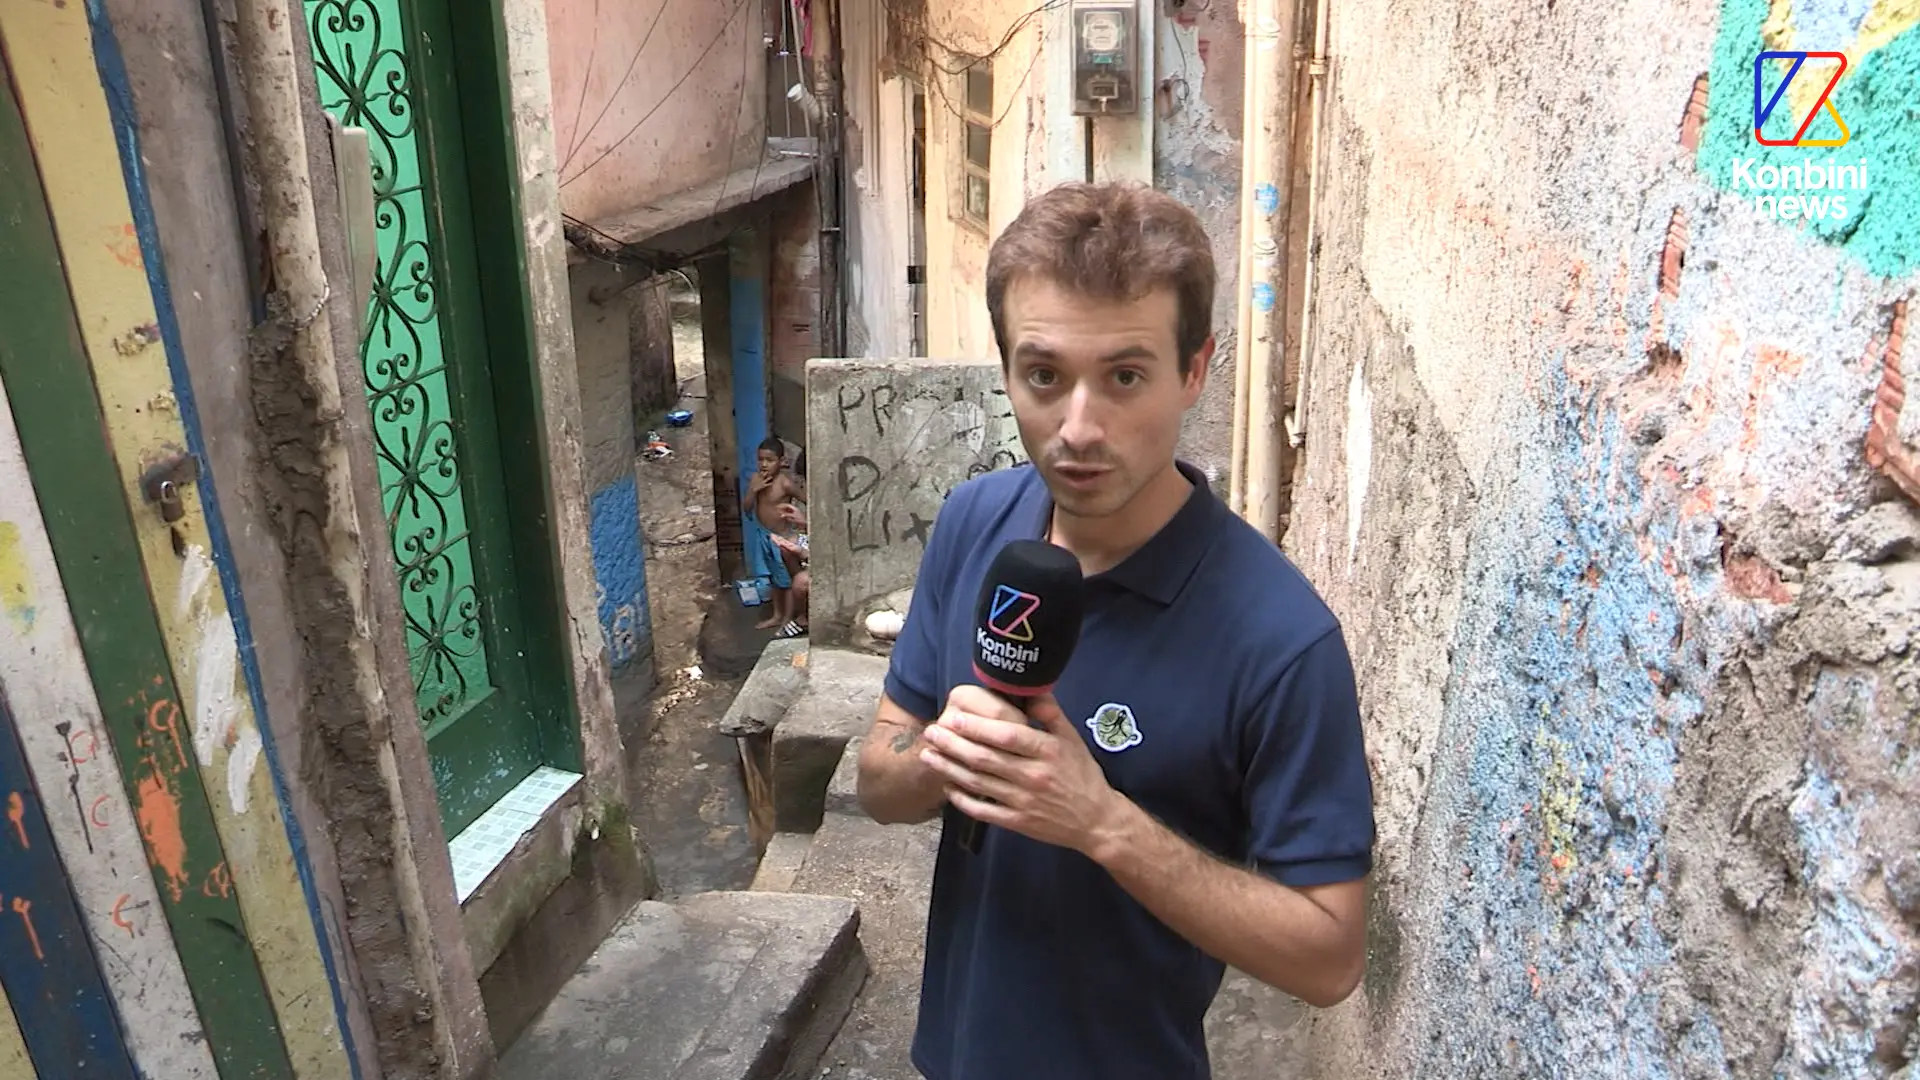 Vidéo : au Brésil, même les favelas sont tentées par l’extrême droite